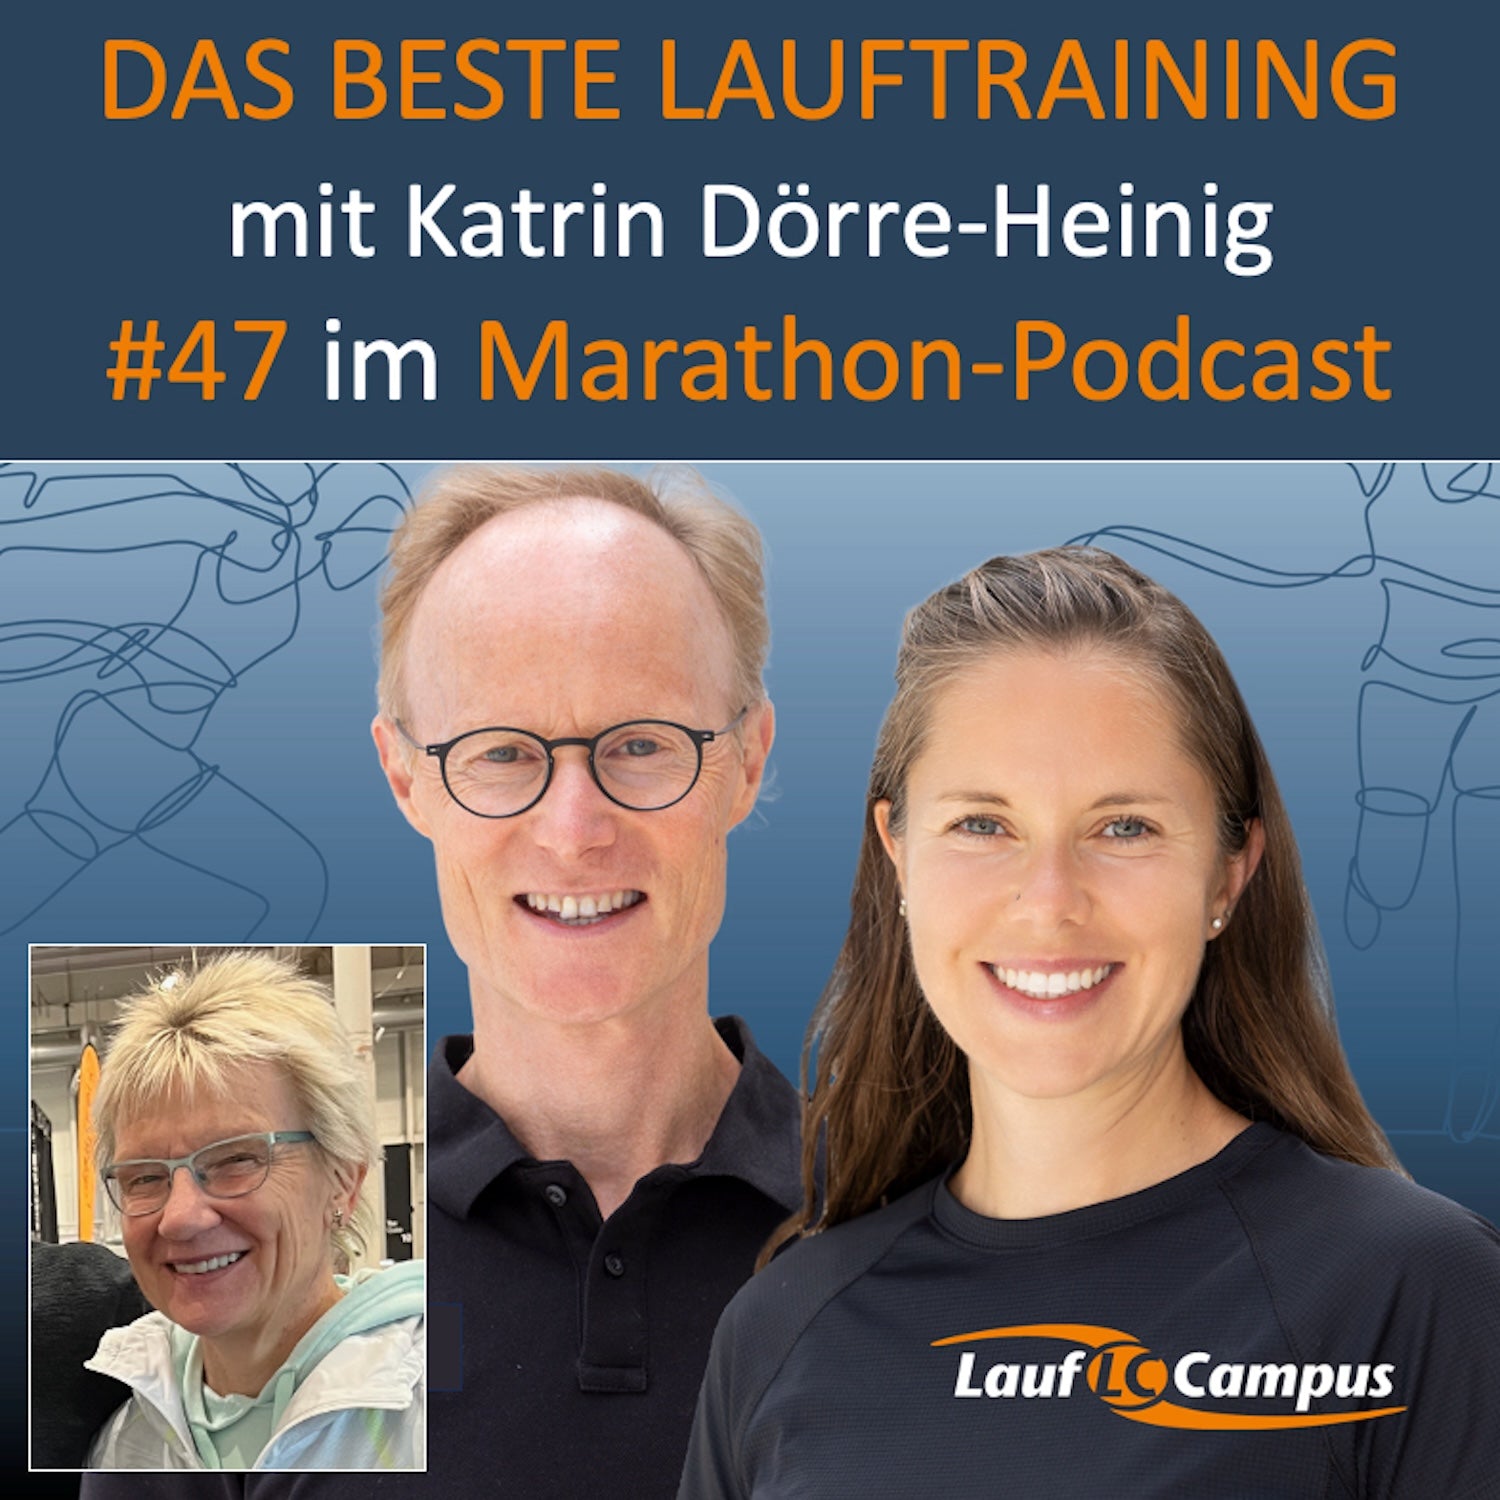 Katrin Dörre-Heinig im Marathon Podcast zu Lauftraining früher und heute